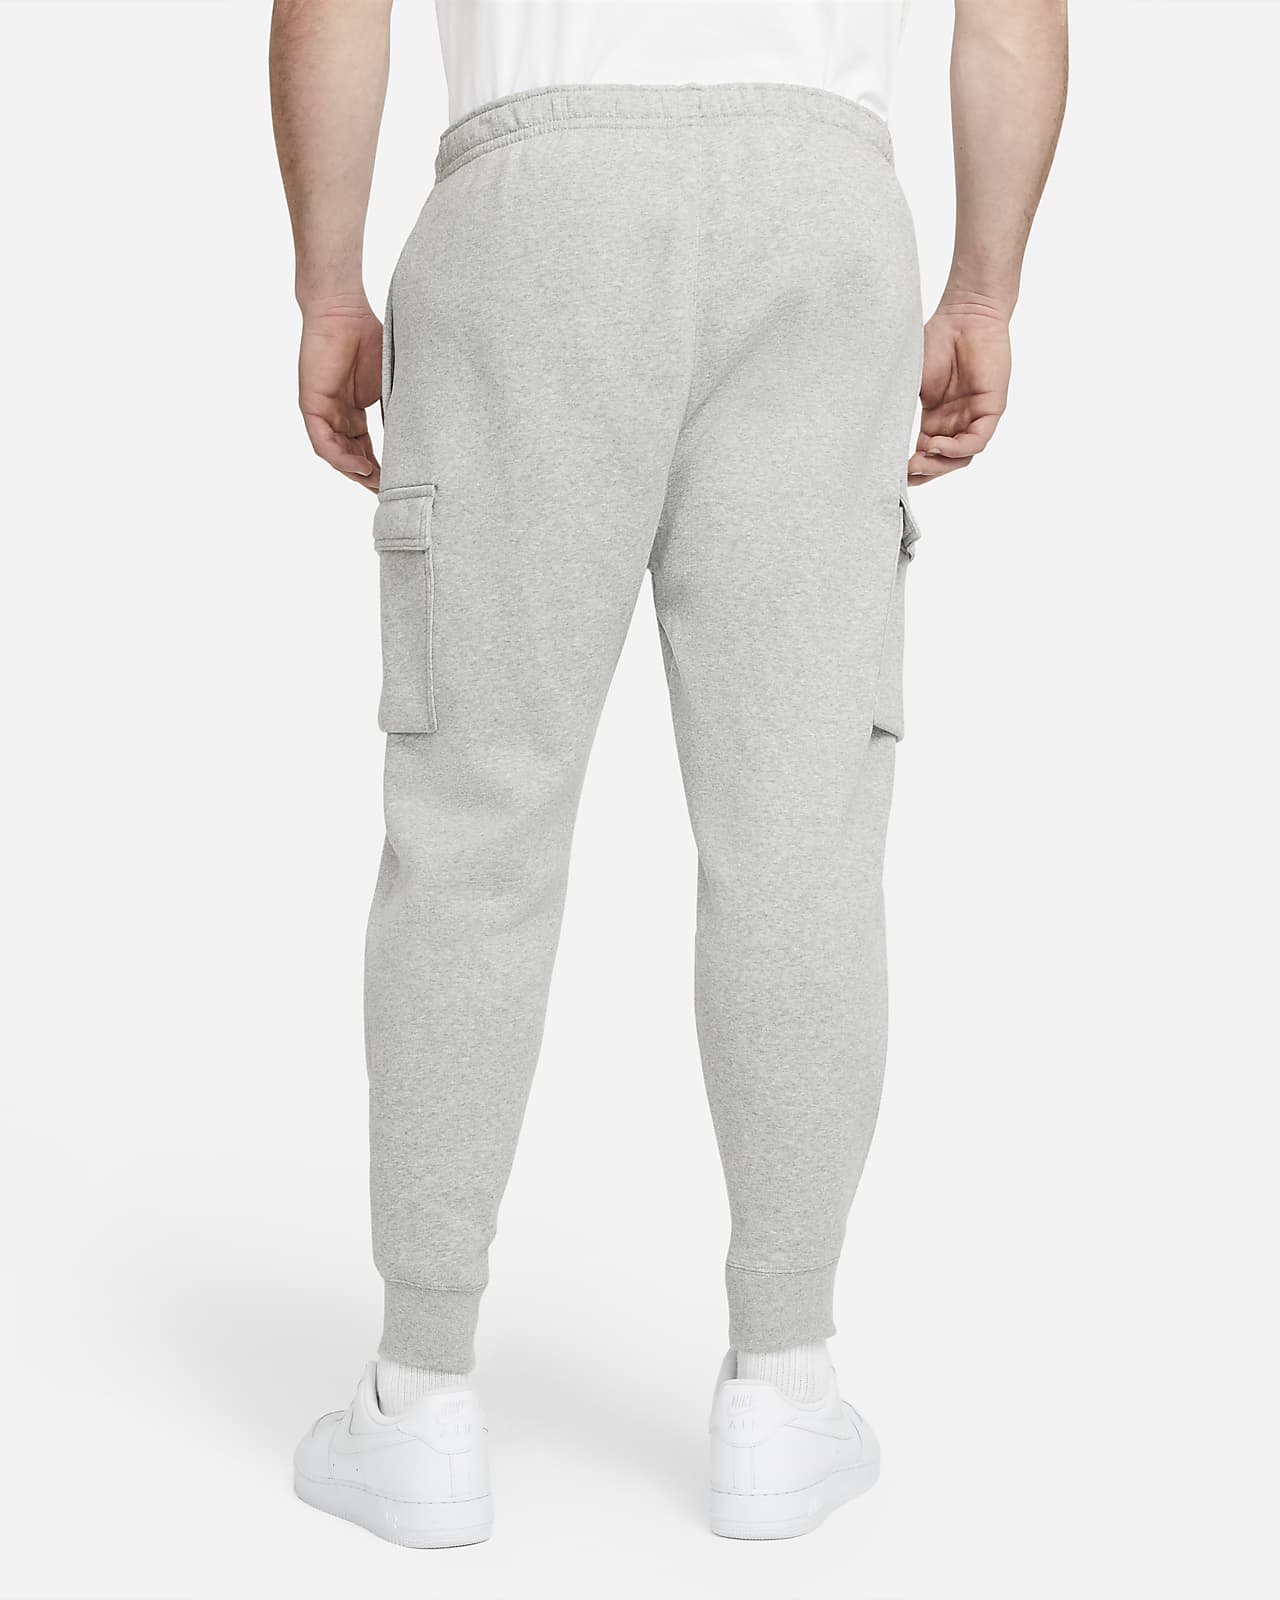 Nike Sportswear Club Fleece Men's Football Pants.